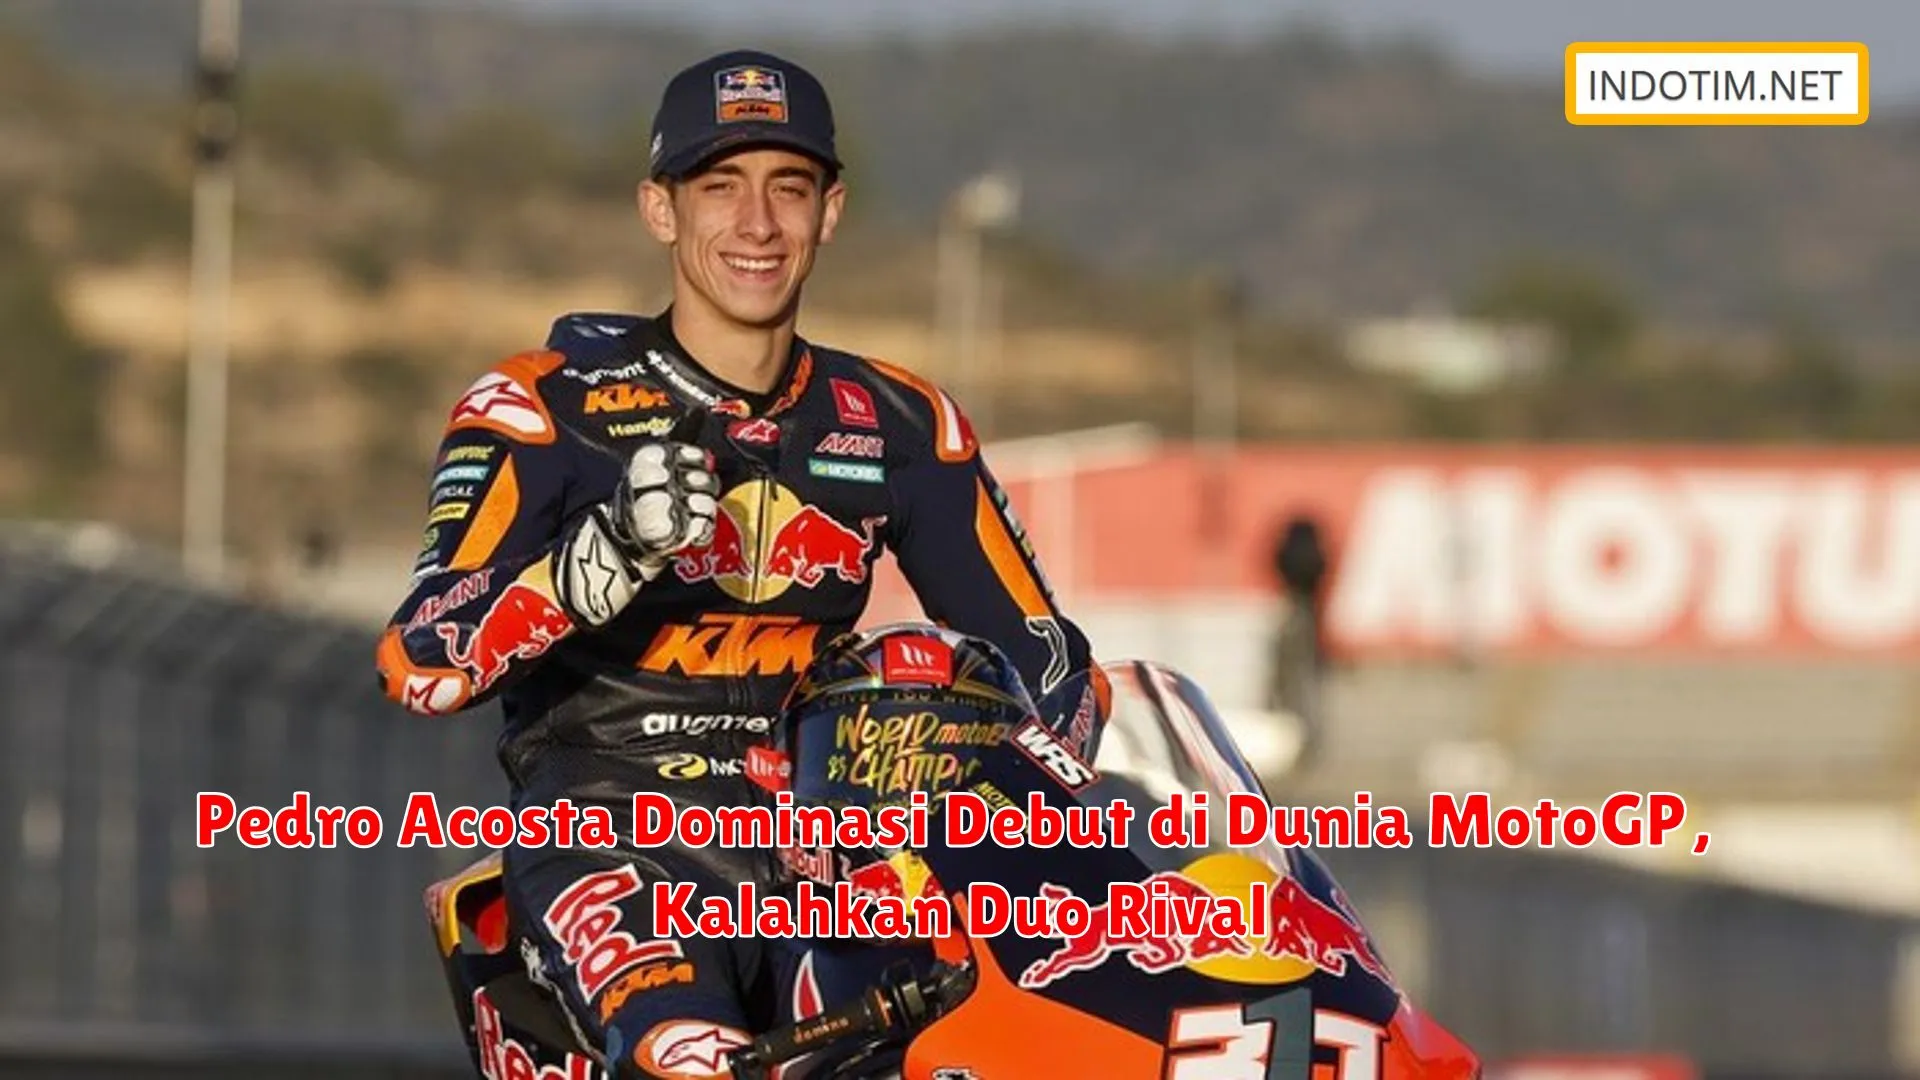 Pedro Acosta Dominasi Debut di Dunia MotoGP, Kalahkan Duo Rival